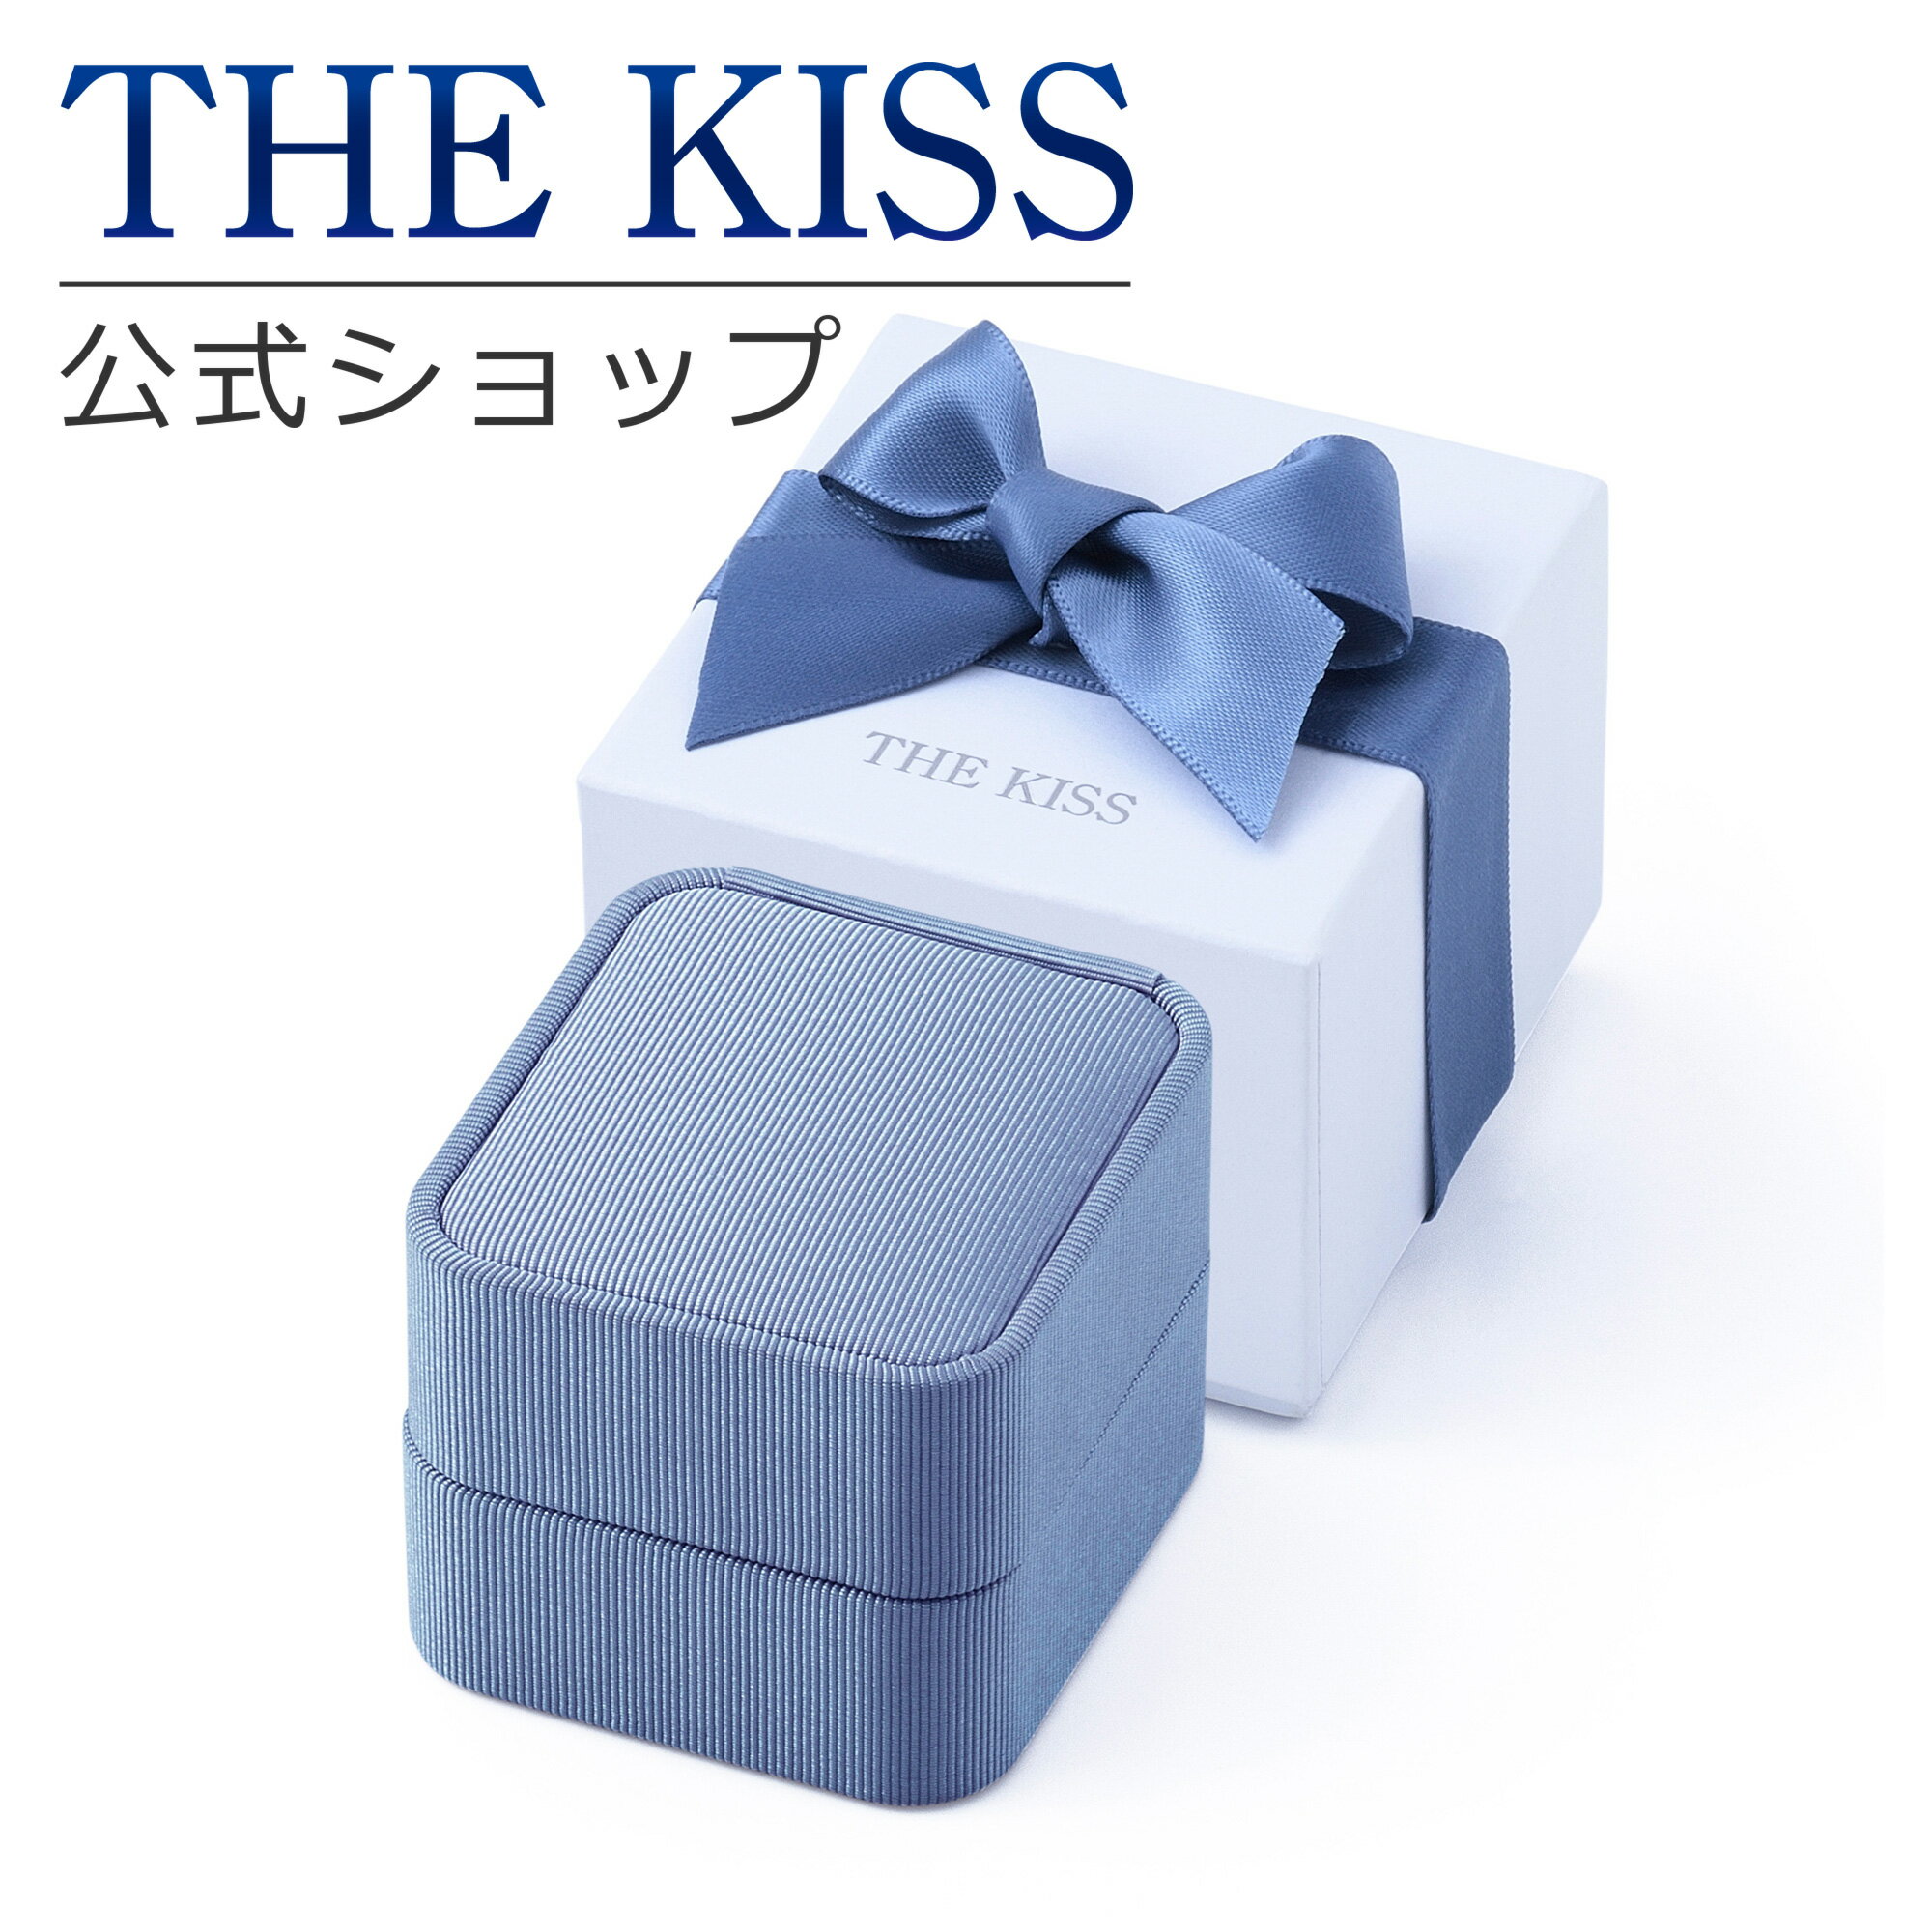 THE KISS 公式ショップ ブルースクエア ジュエリーボックス ジュエリーブランド THEKISS ジュエリー・アクセサリー用品 ケース BOX-REGULAR09 母の日 誕生日 プレゼント【あす楽対応（土日祝除く）】